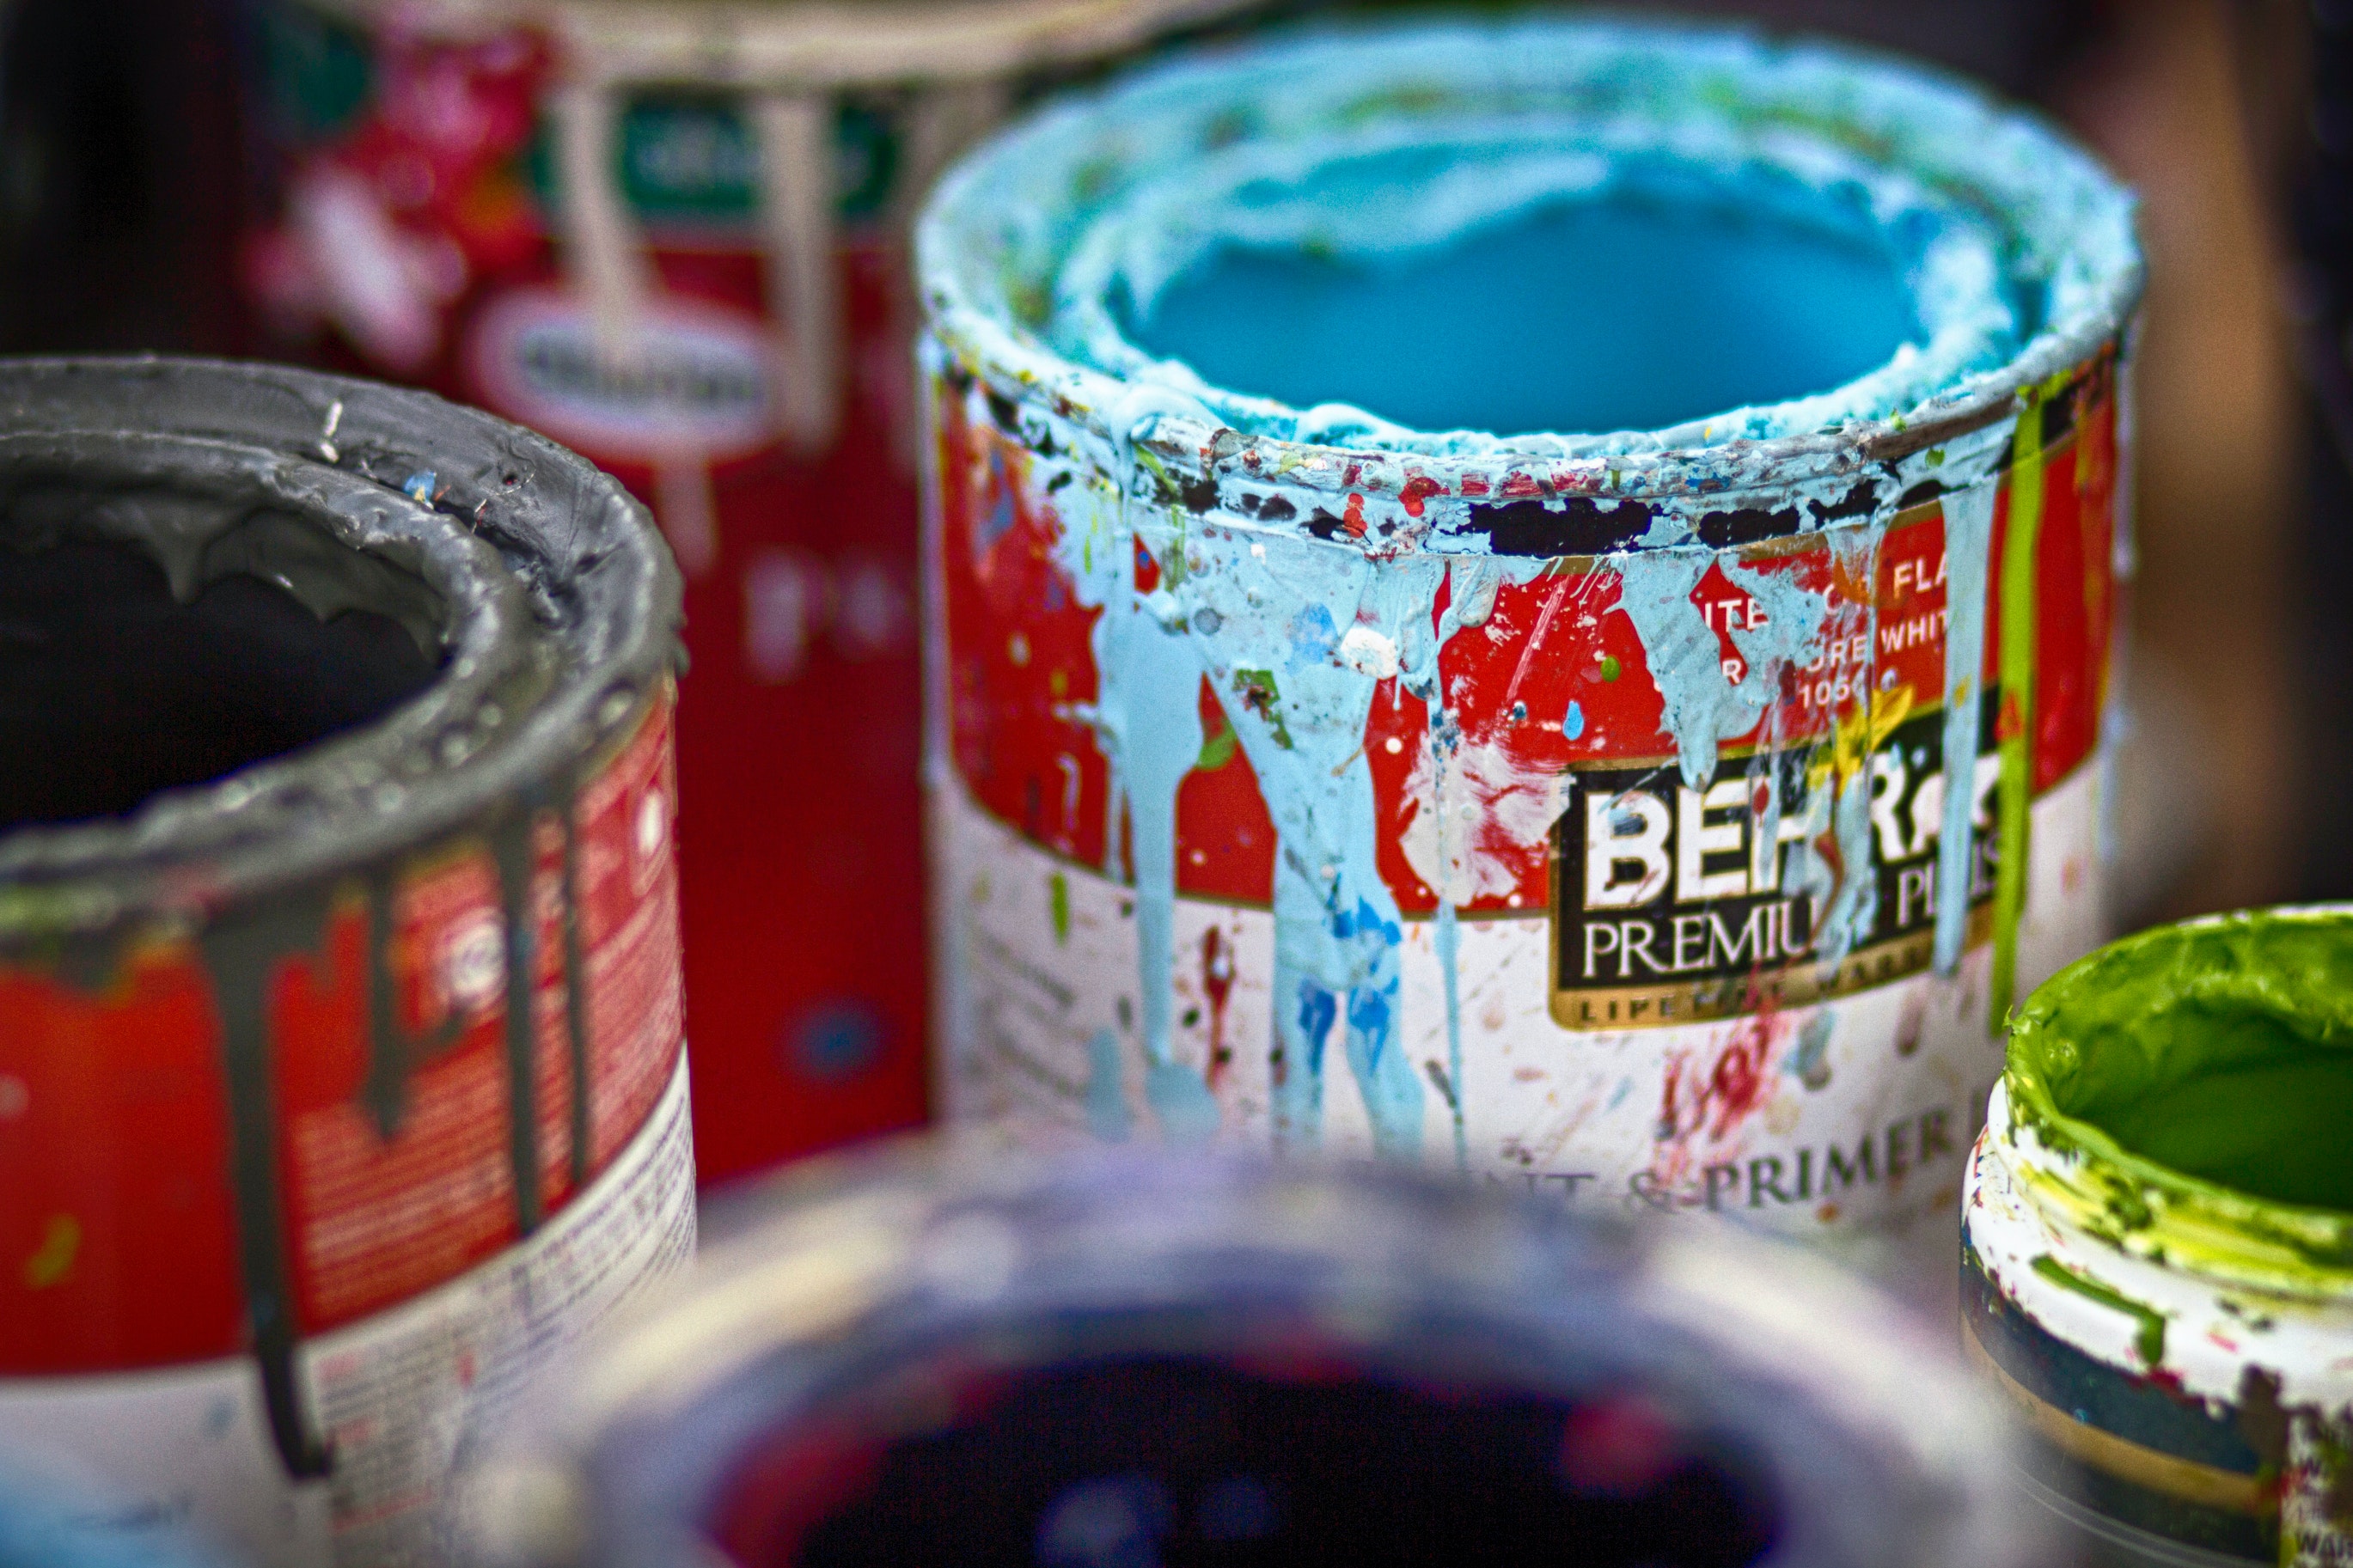 Paint Cans | Source: Pexels